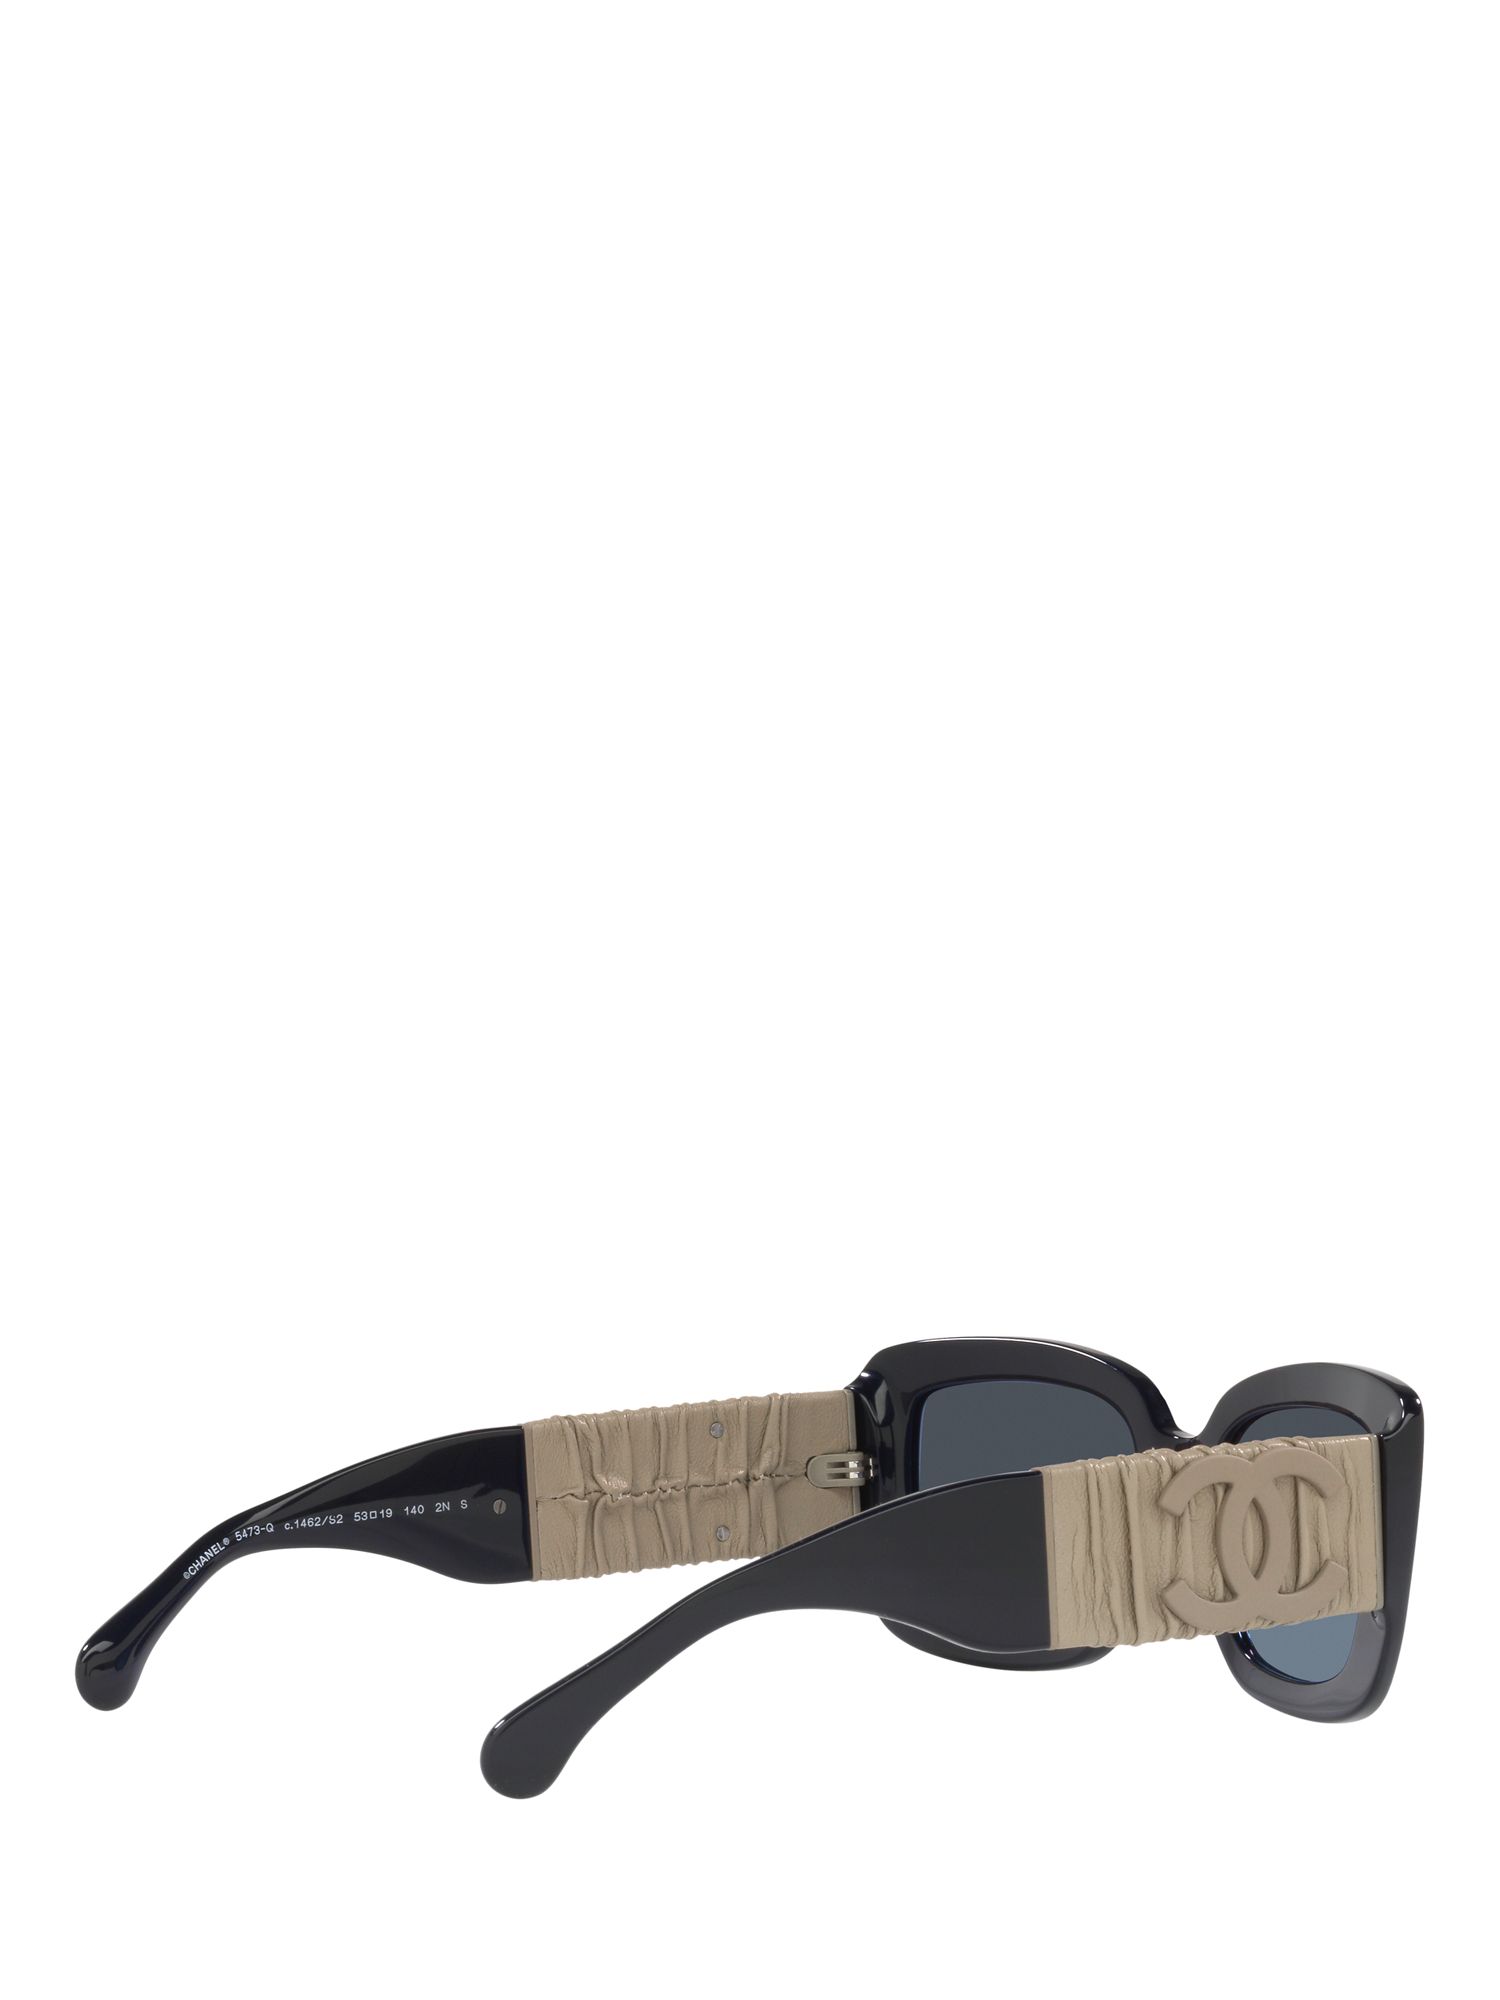 Sunglasses: Rectangle Sunglasses, acetate & calfskin — Fashion